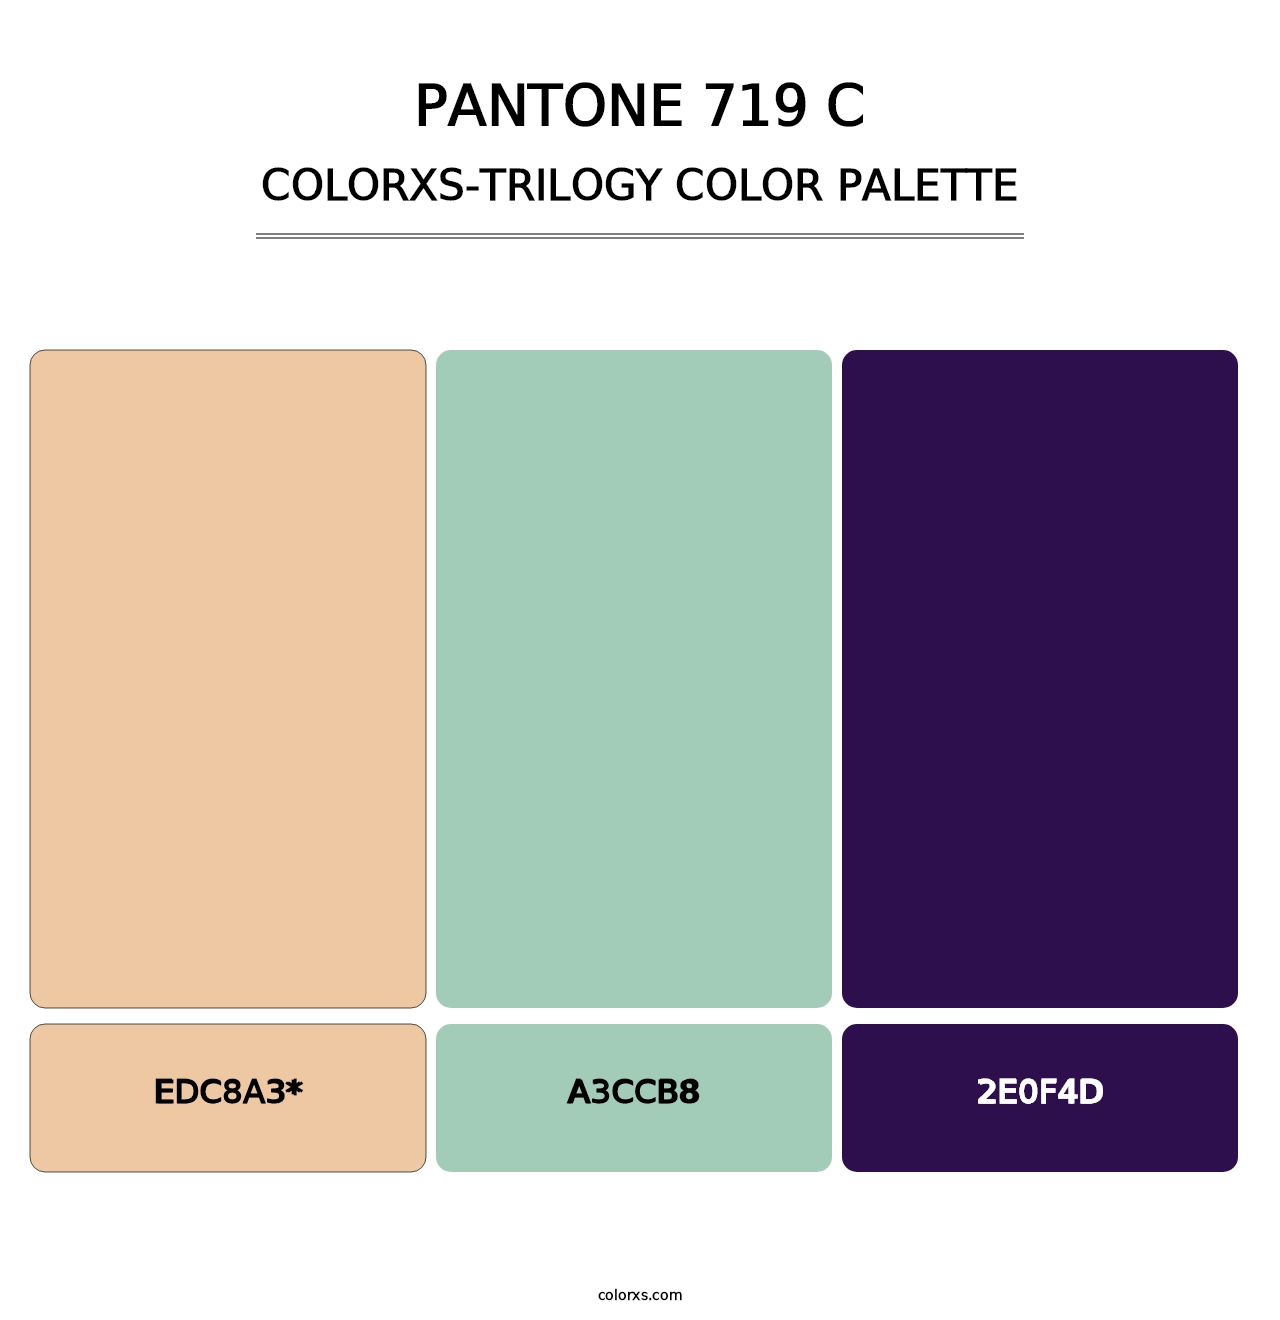 PANTONE 719 C - Colorxs Trilogy Palette